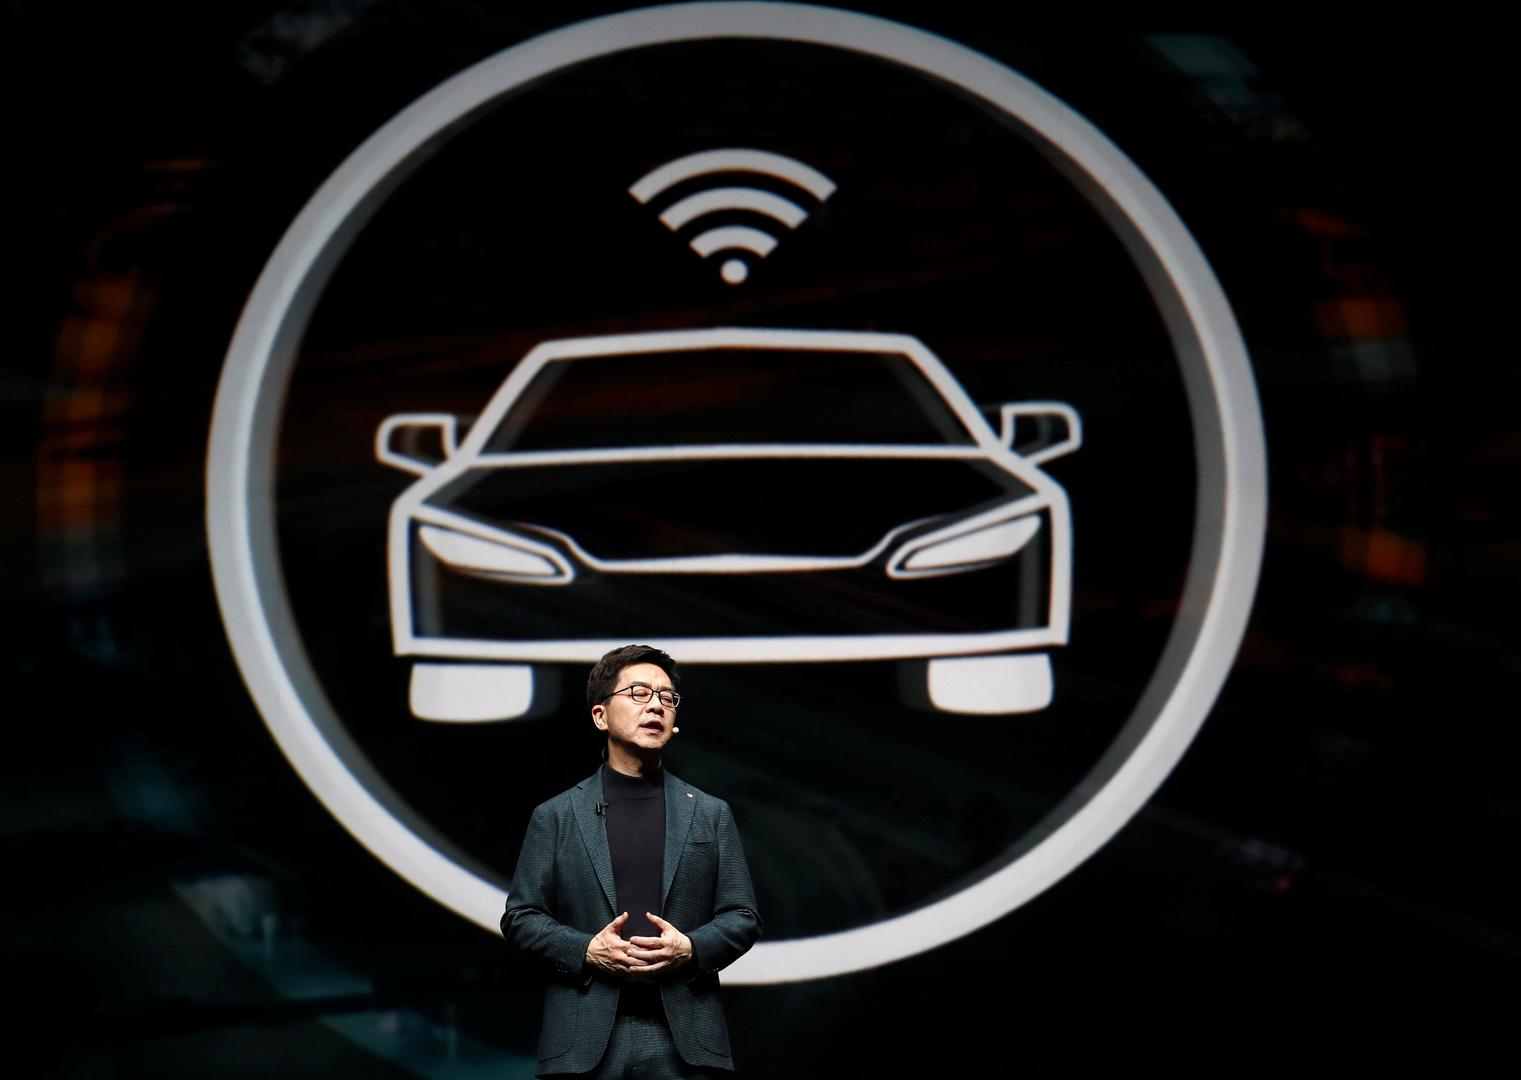 I.P. Park, predsjednik LG Electronicsa, govorio je o autonomnoj vožnji, na koju su se mnogi fokusirali